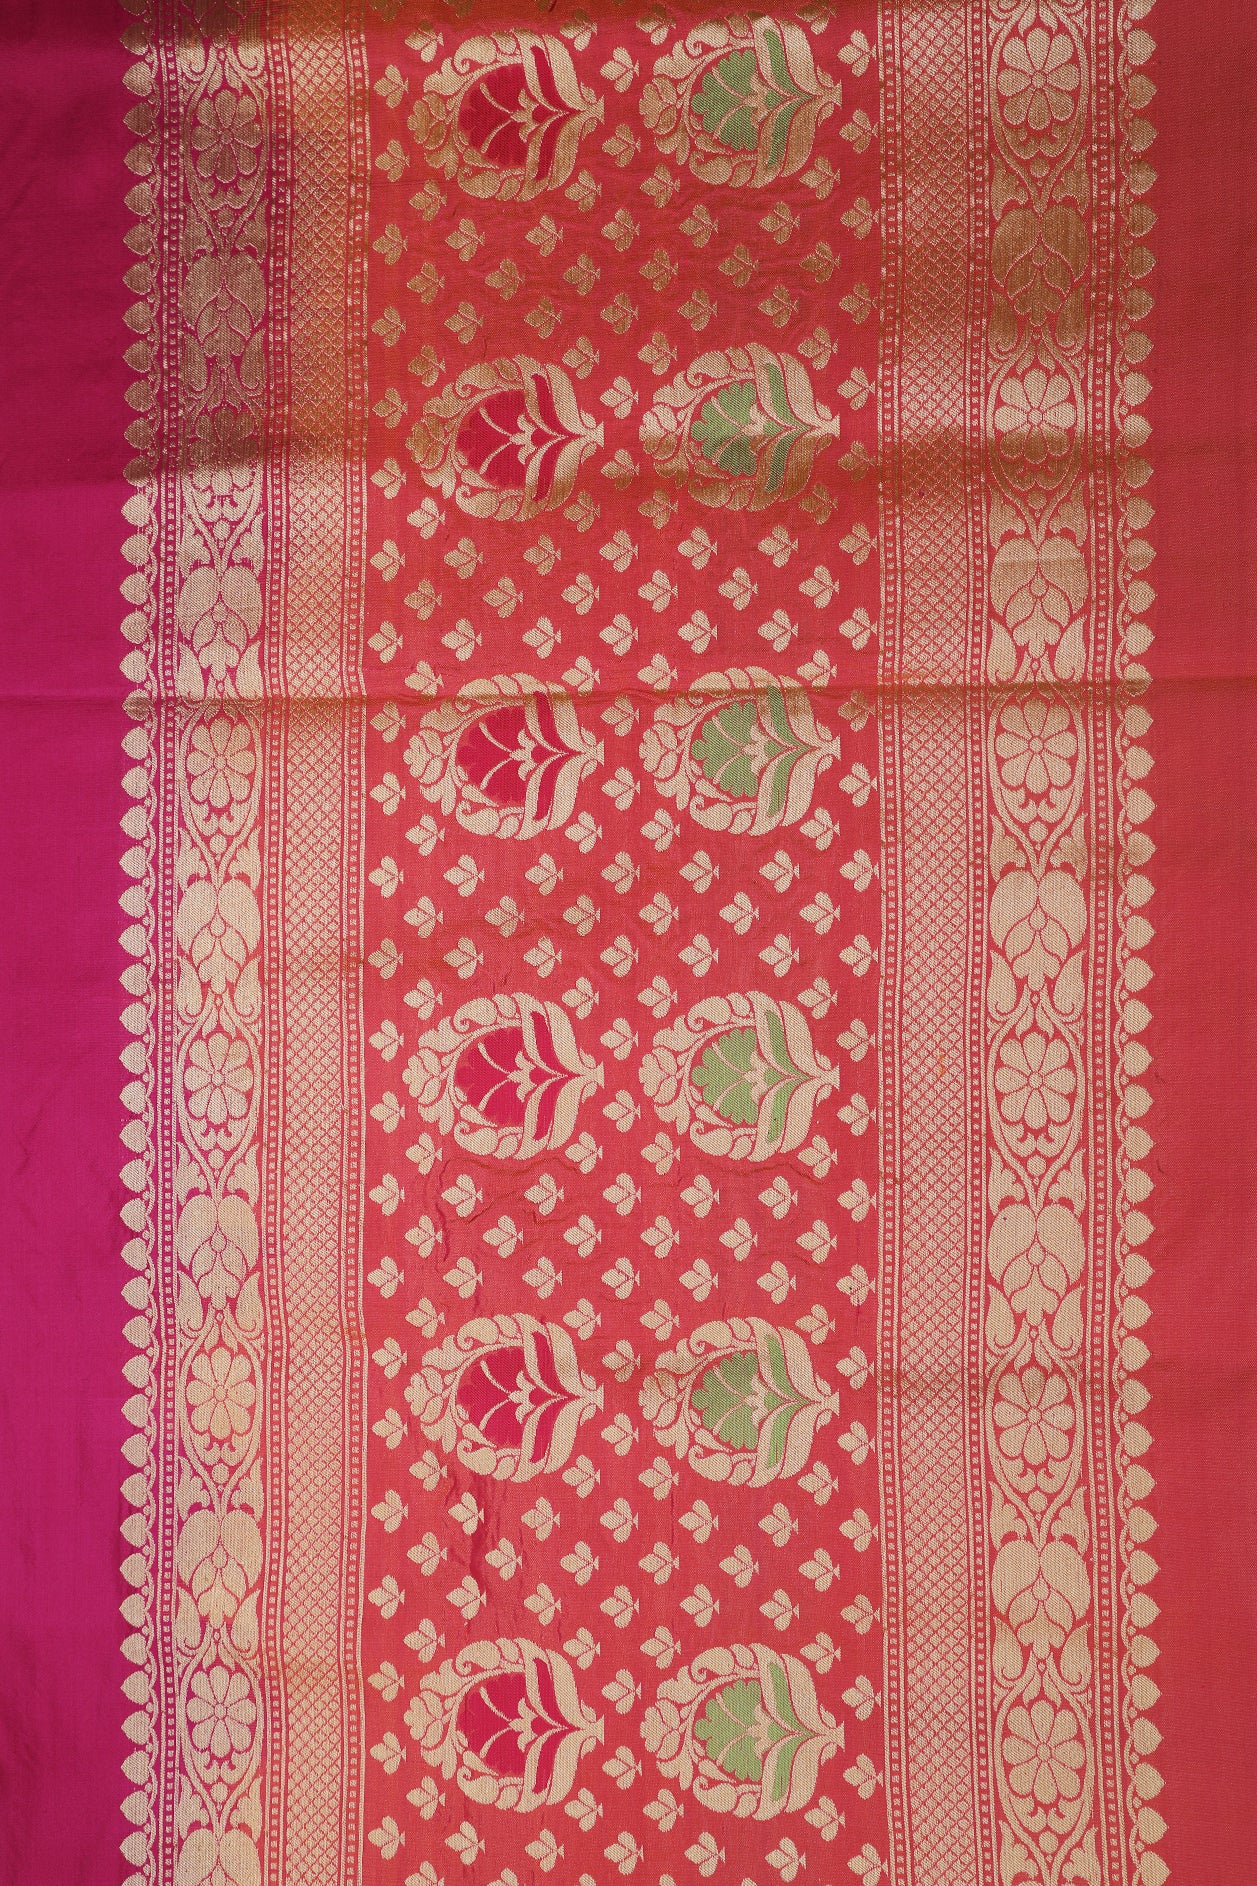 Bird Butta Magenta Pink Banarasi Silk Saree With Meenakari Work Border